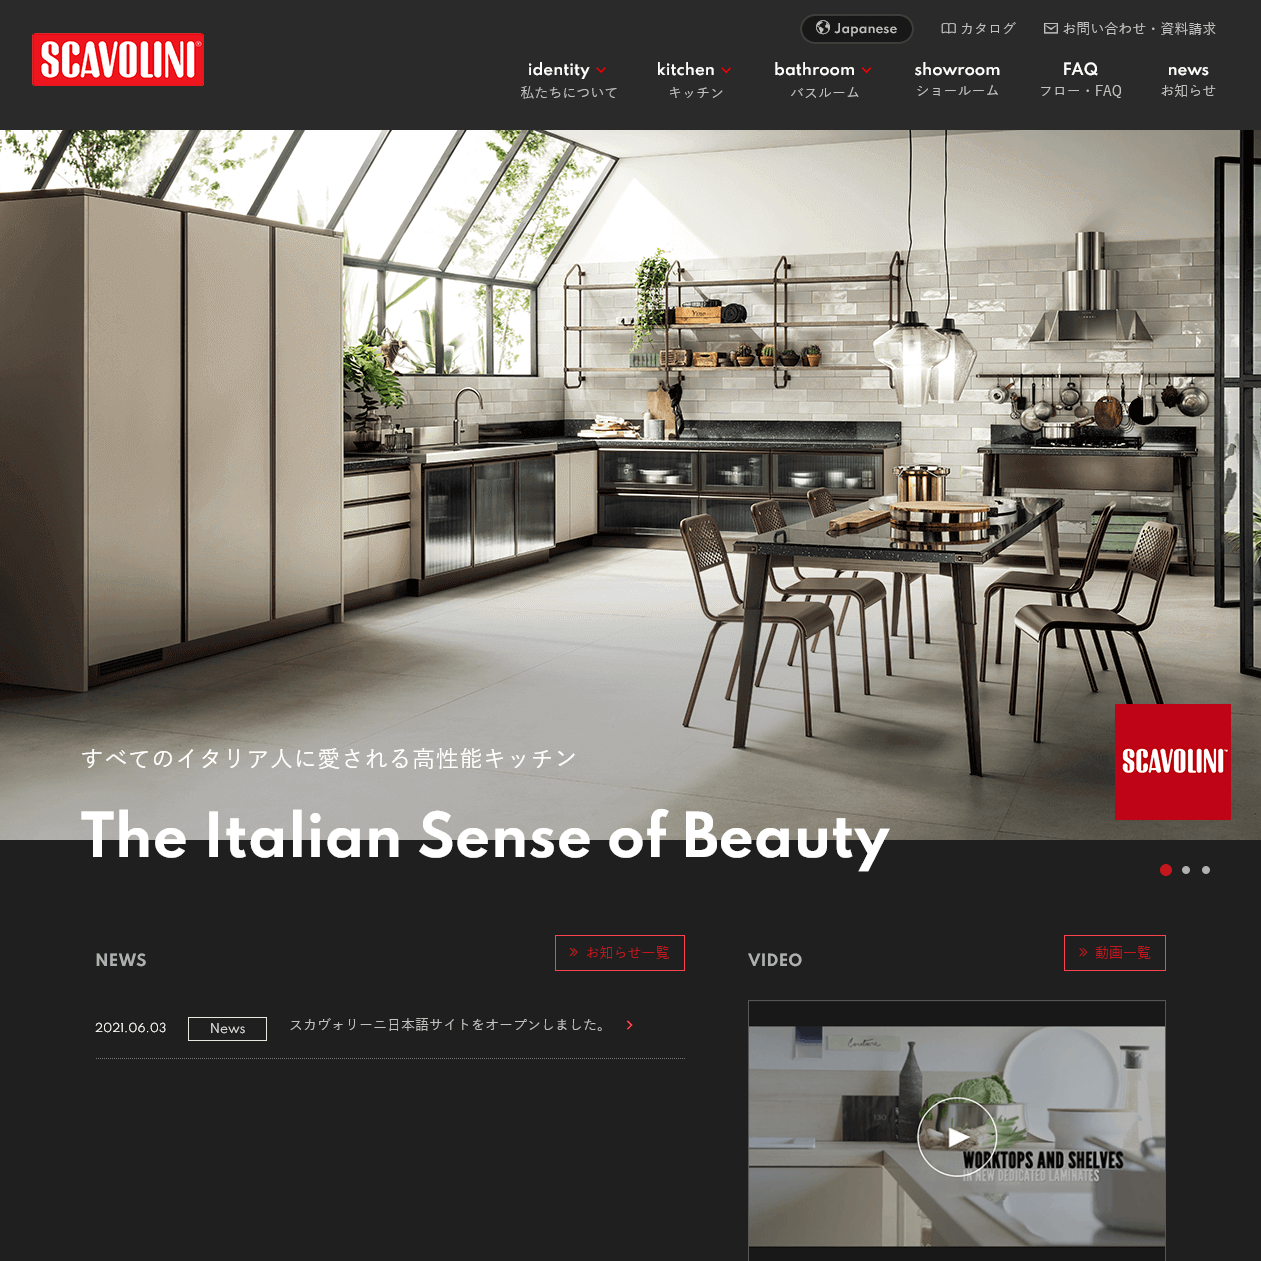 イタリアキッチンブランド「Scavolini」の日本語版公式サイト